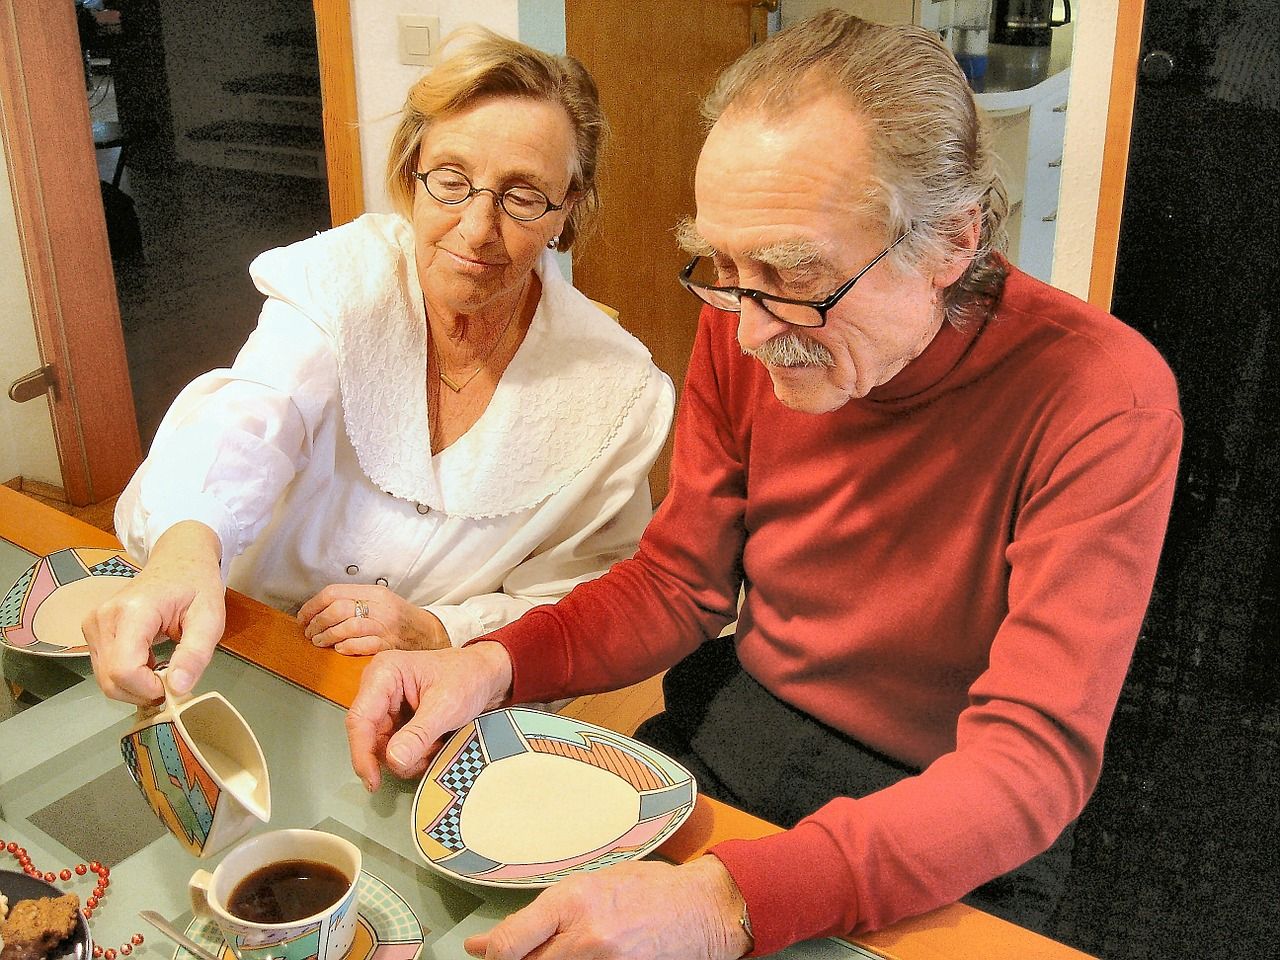 Aide to Elderly helping elder to eat